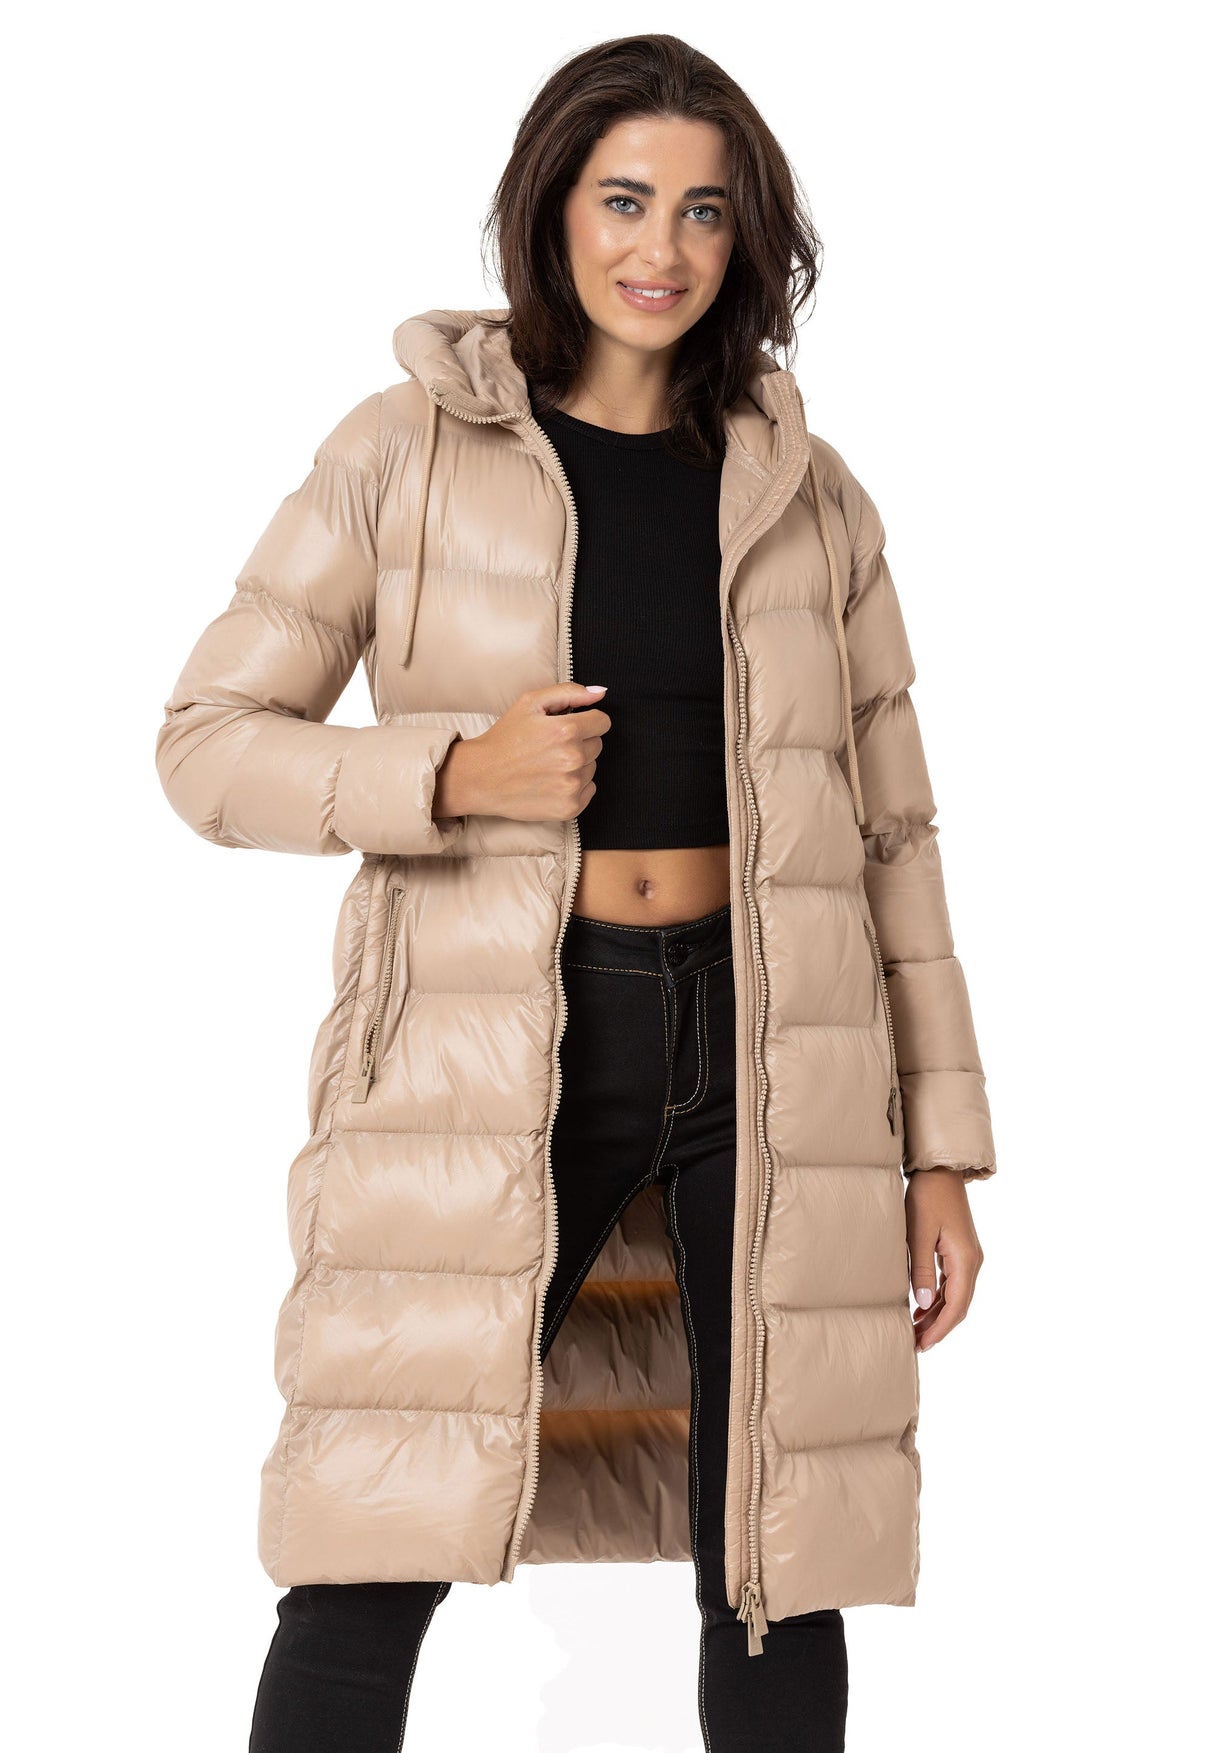 WM137 Damska zimowa kurtka pikowana w eleganckim designie